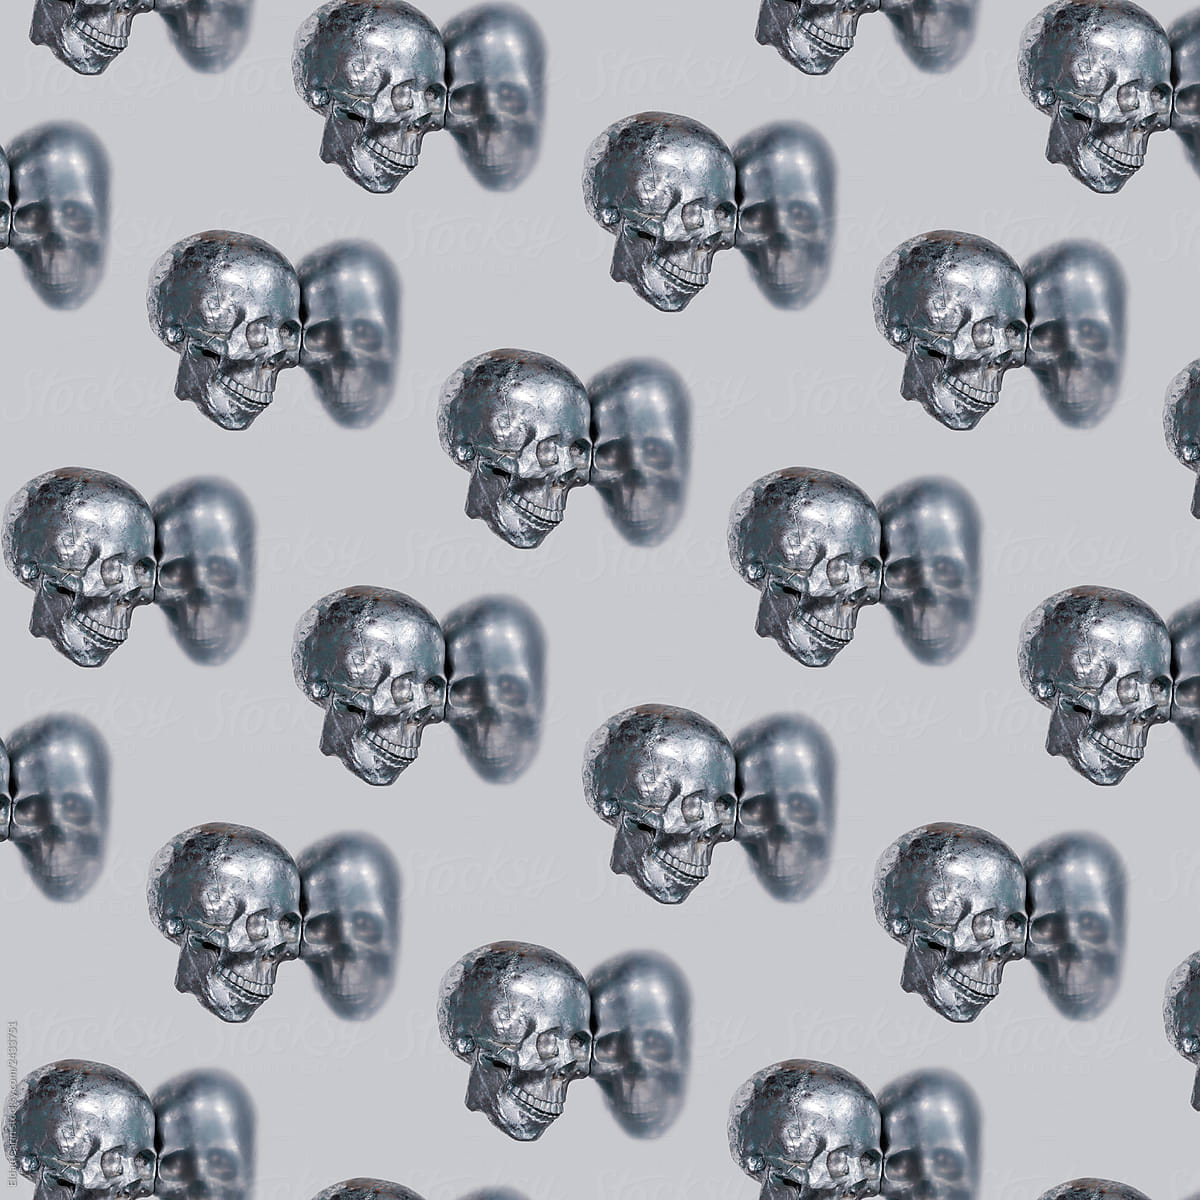 Skull Pattern on Silver